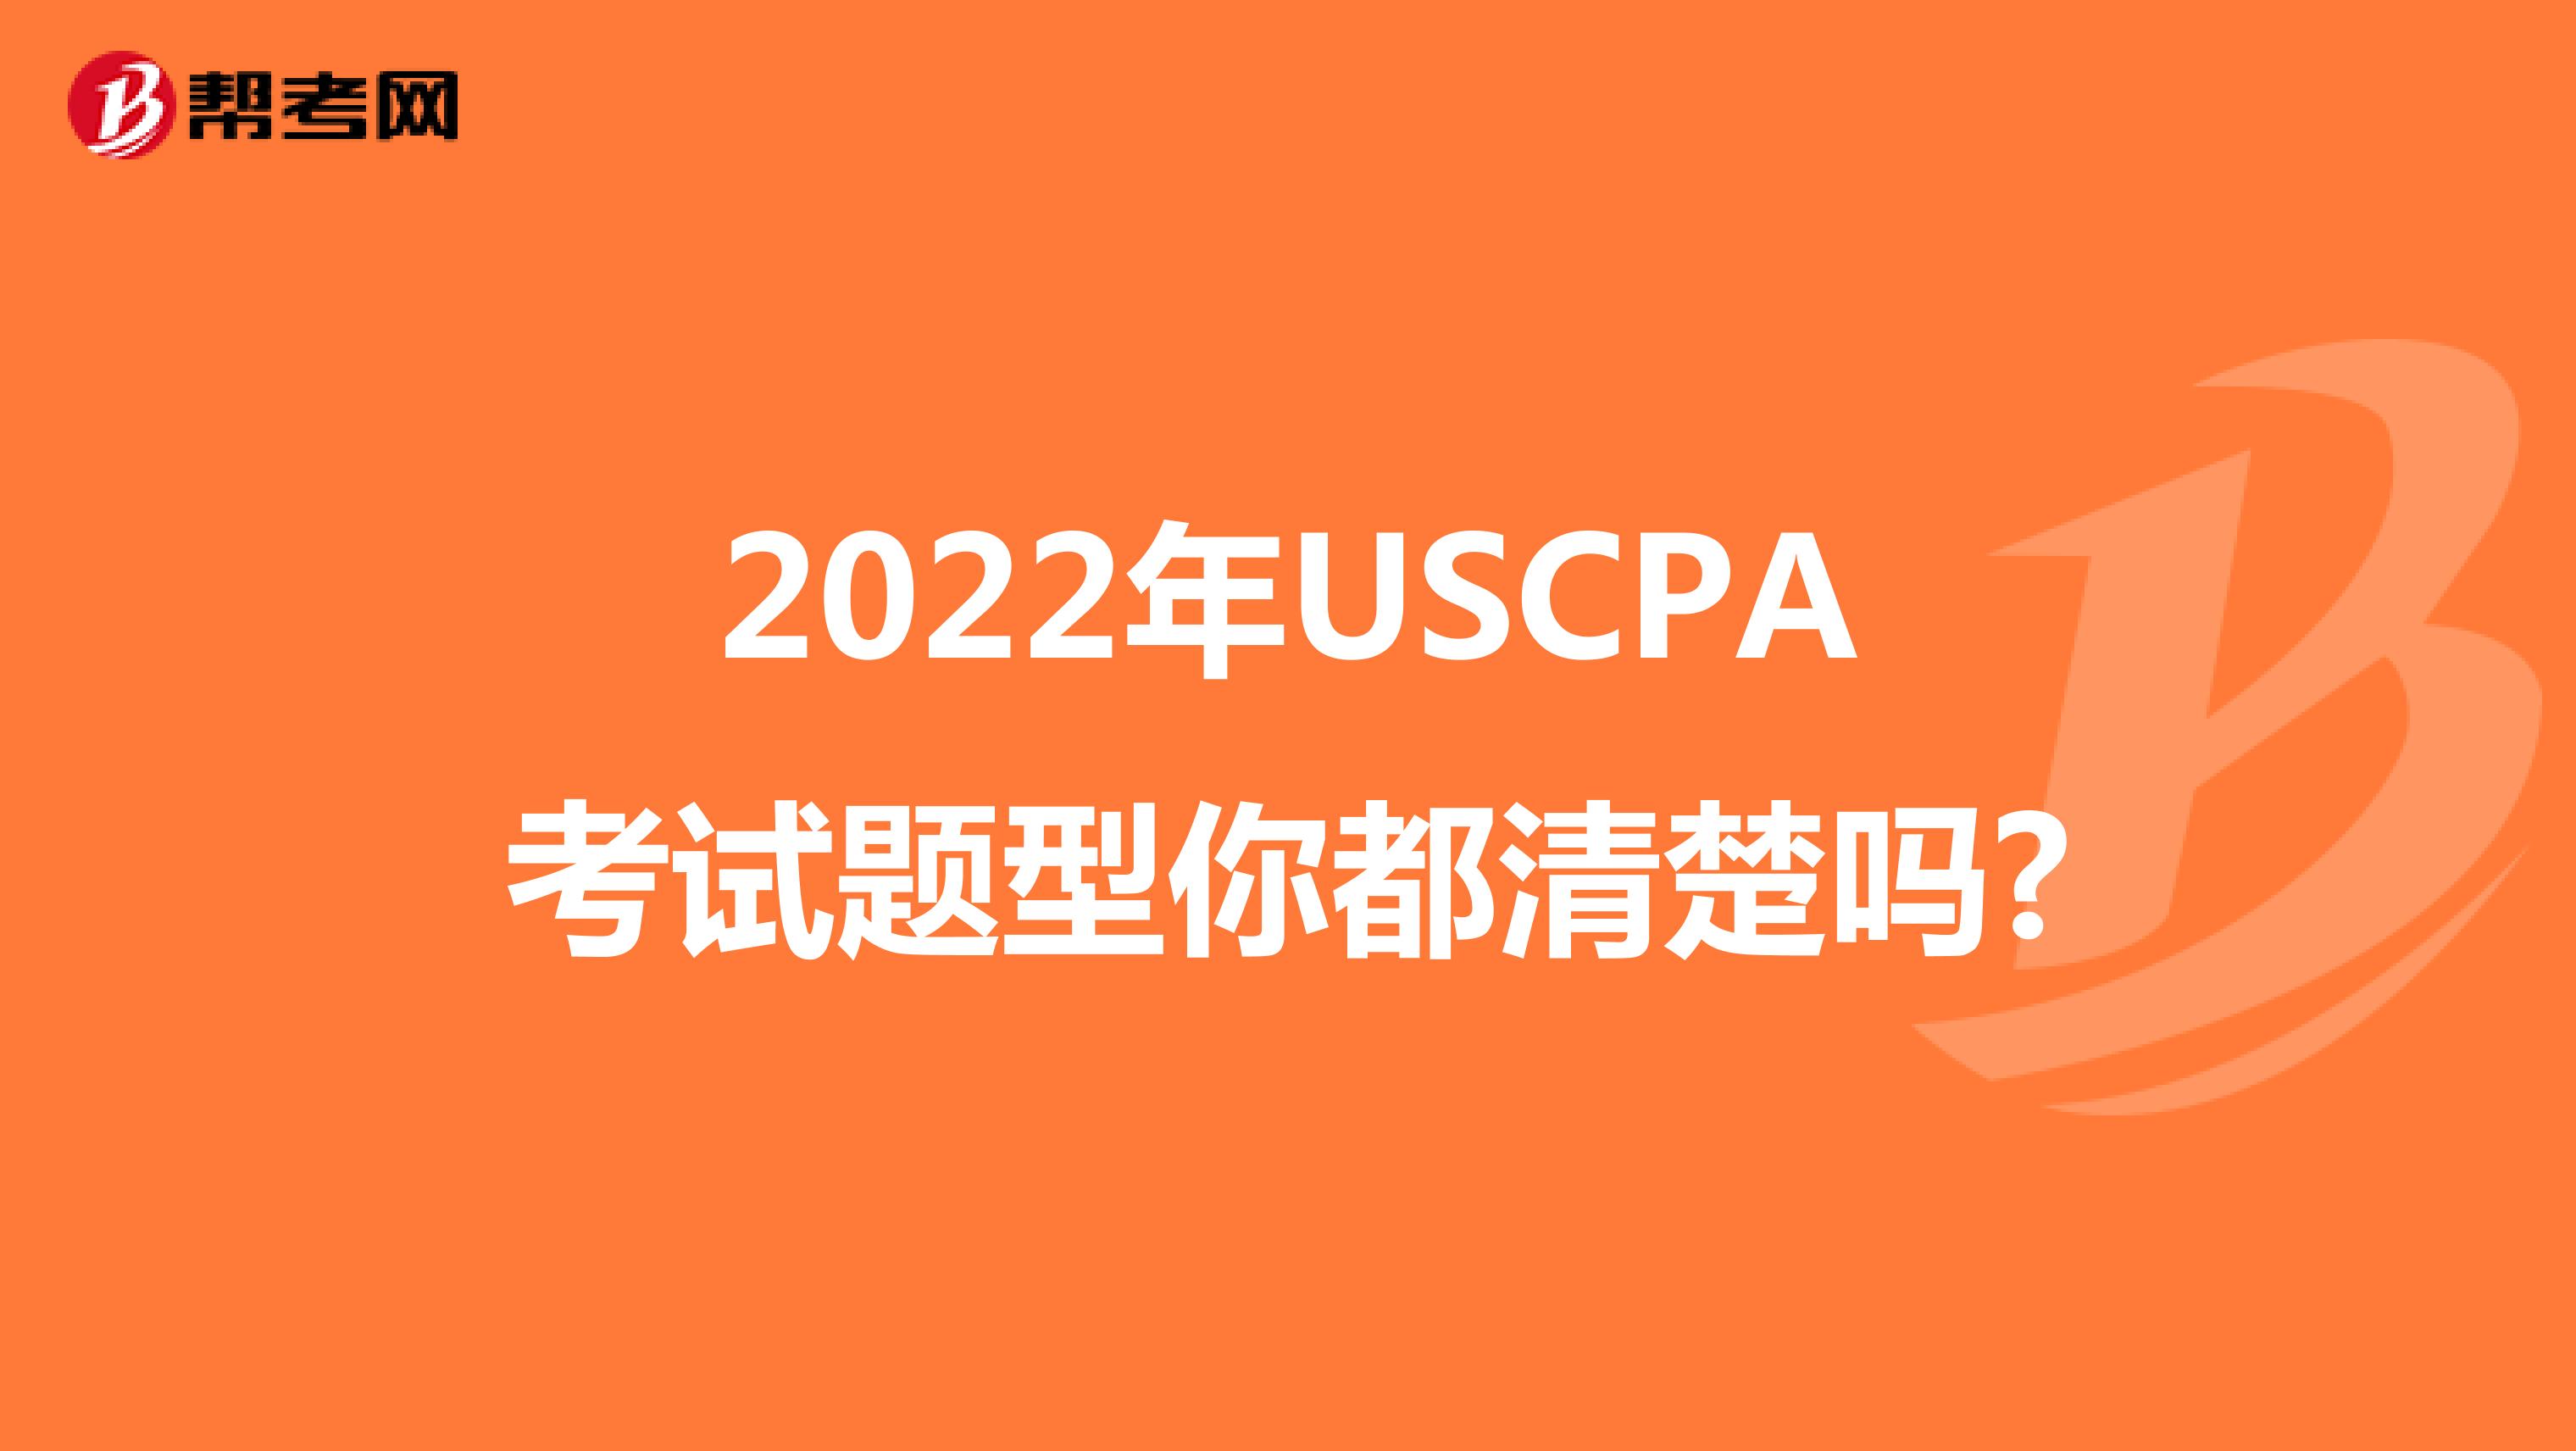 2022年USCPA考试题型你都清楚吗?